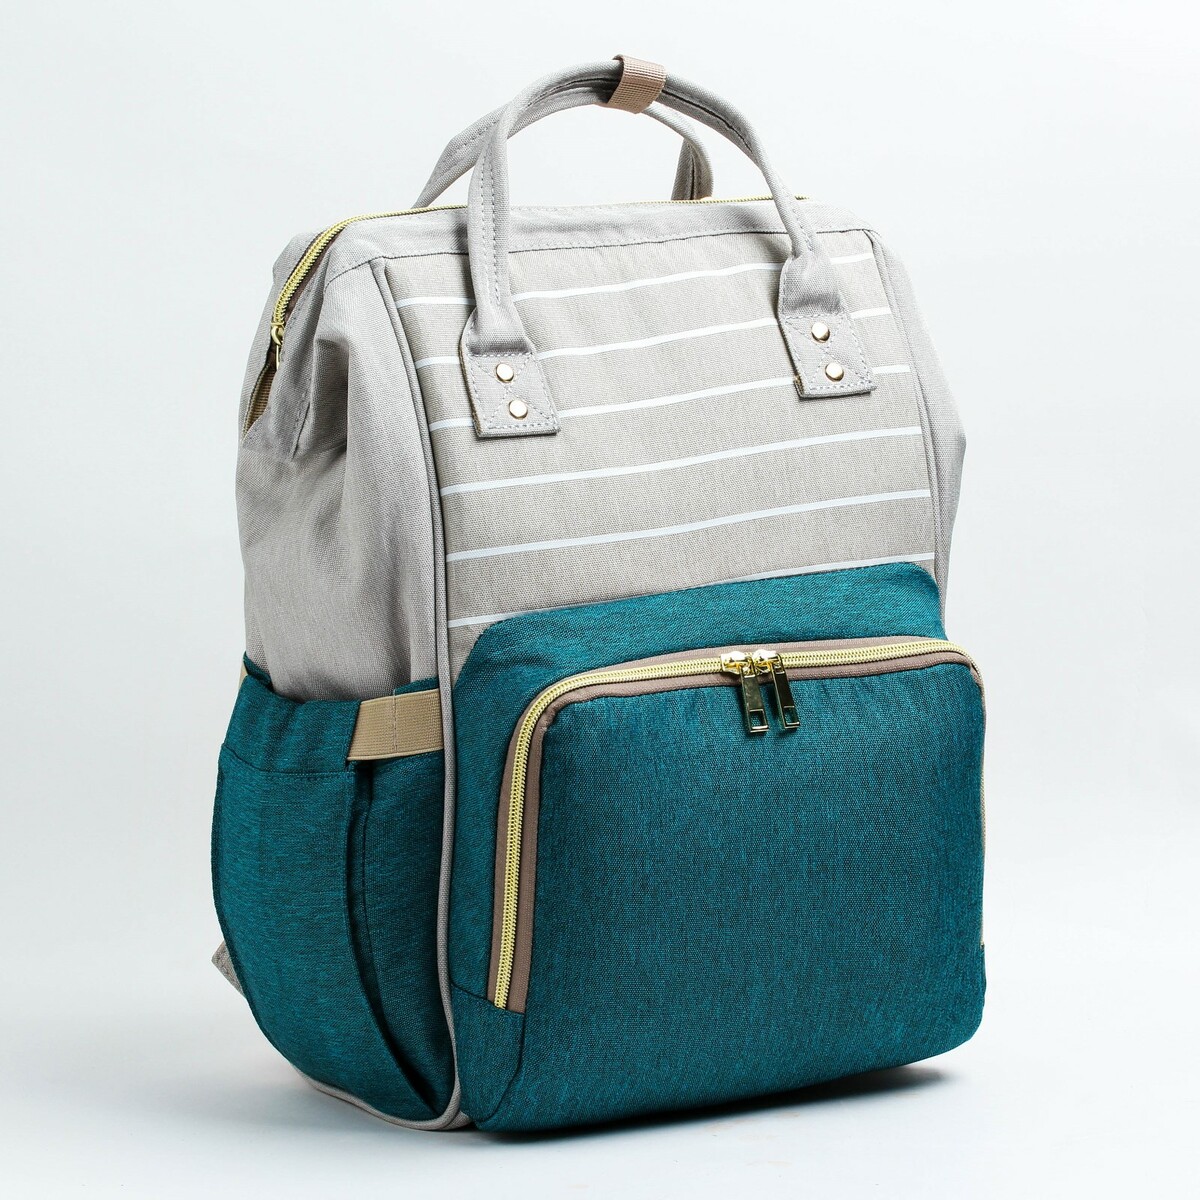 Рюкзак женский с термокарманом, термосумка - портфель, цвет серый/зеленый рюкзак женский